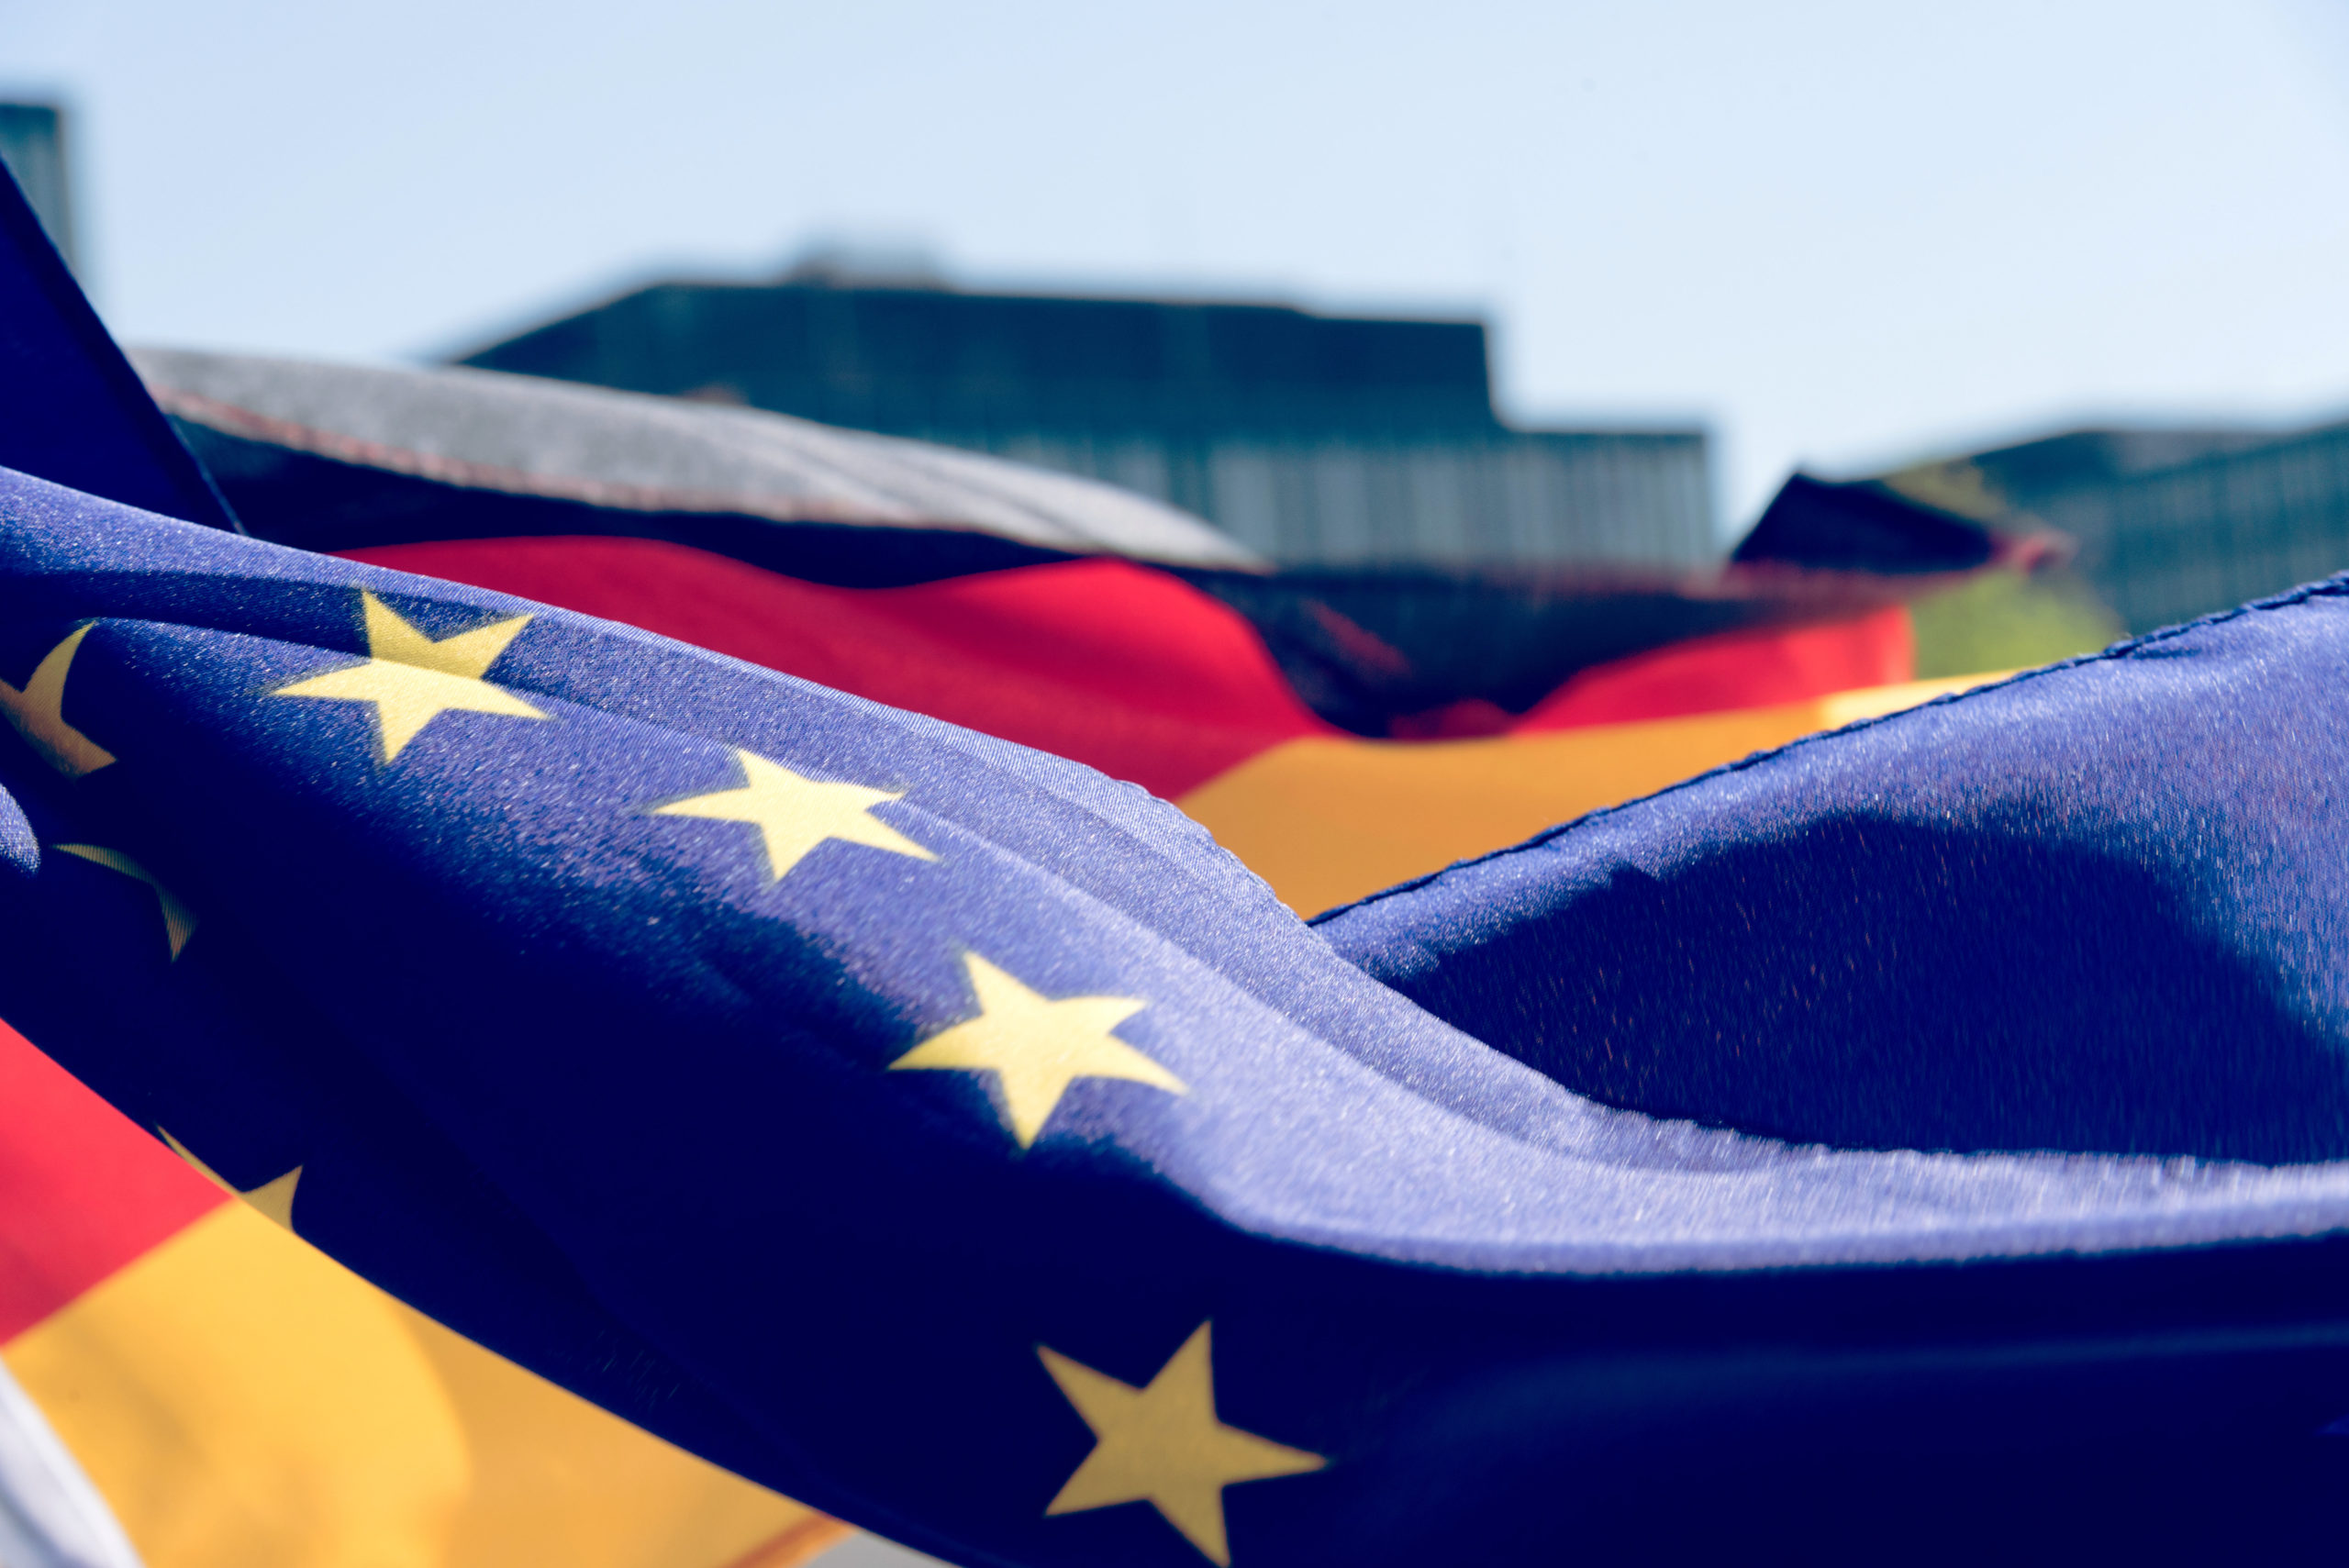 Fahnen von Deutschland und der Europäischen Union EU